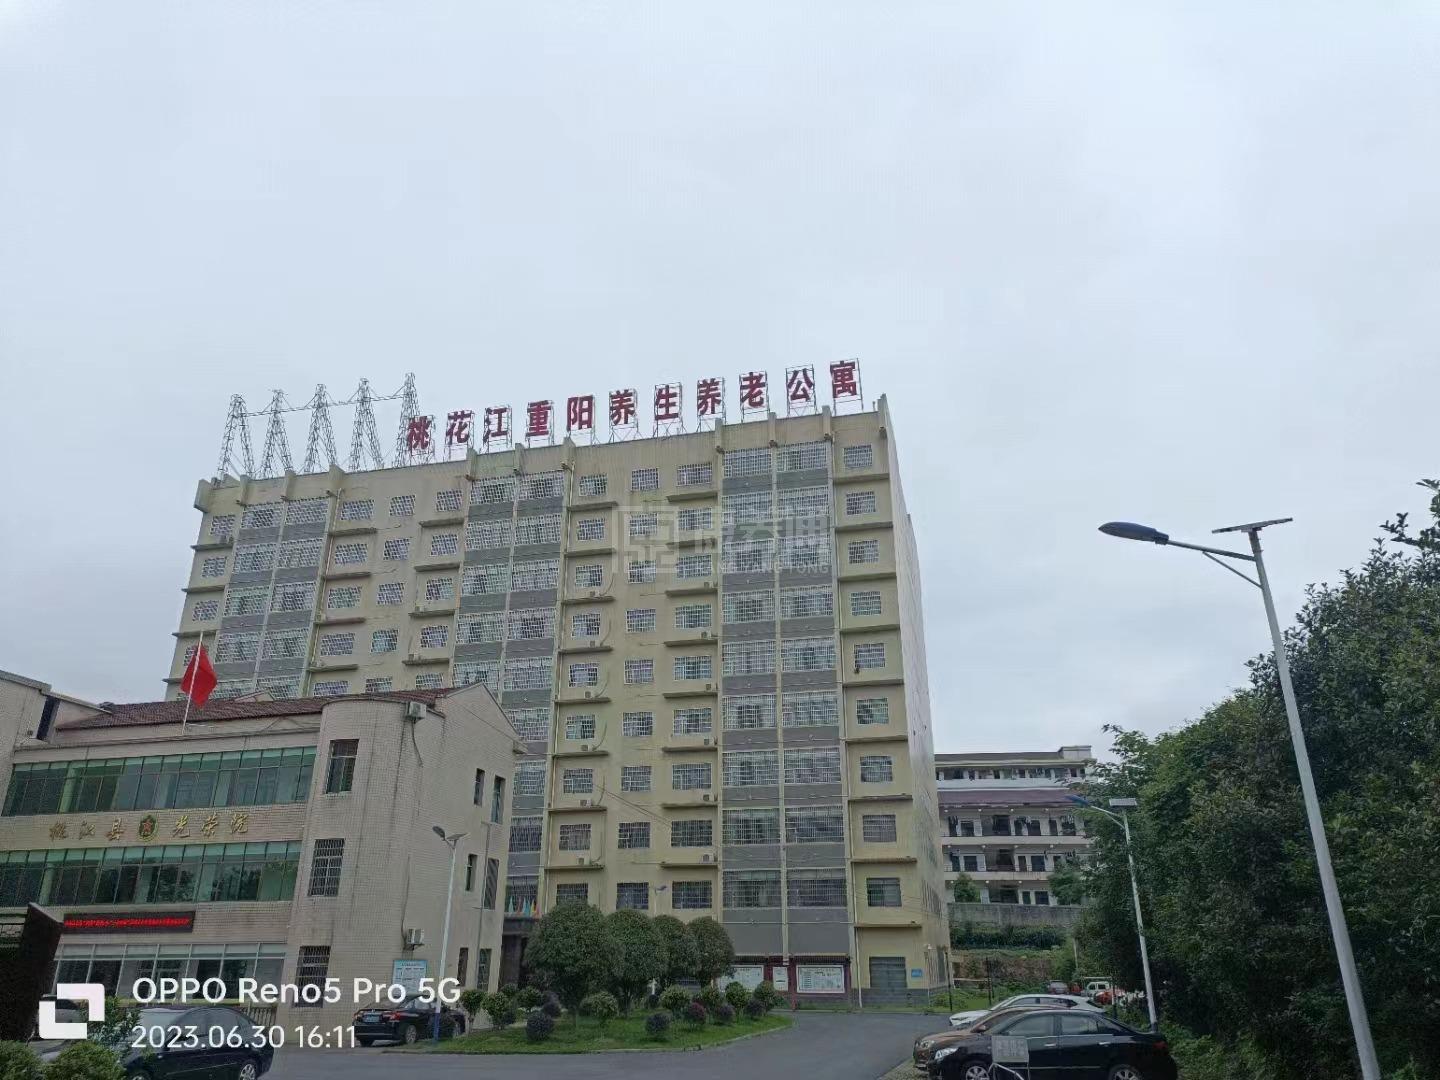 桃江县社会福利服务中心服务项目图2亦动亦静、亦新亦旧